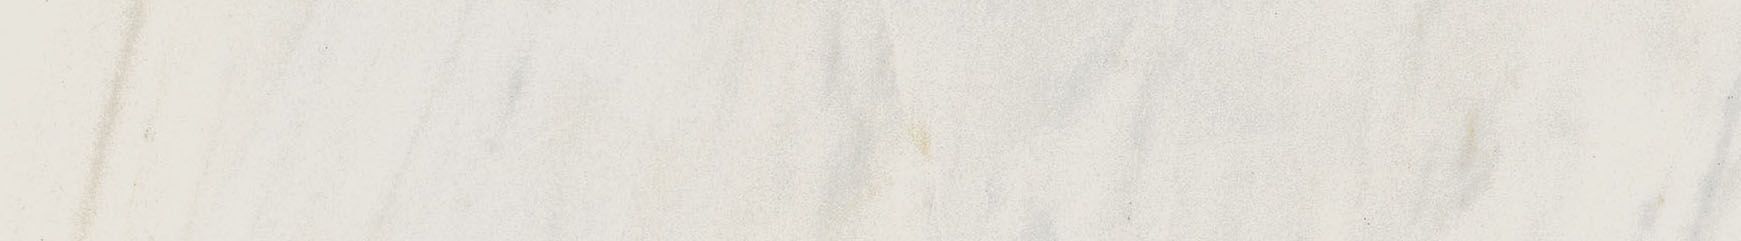 Плитка из керамогранита матовая Italon Шарм Экстра 7.2x60 белый (610130002128) плитка из керамогранита матовая italon шарм экстра 7 2x60 белый 610130002129